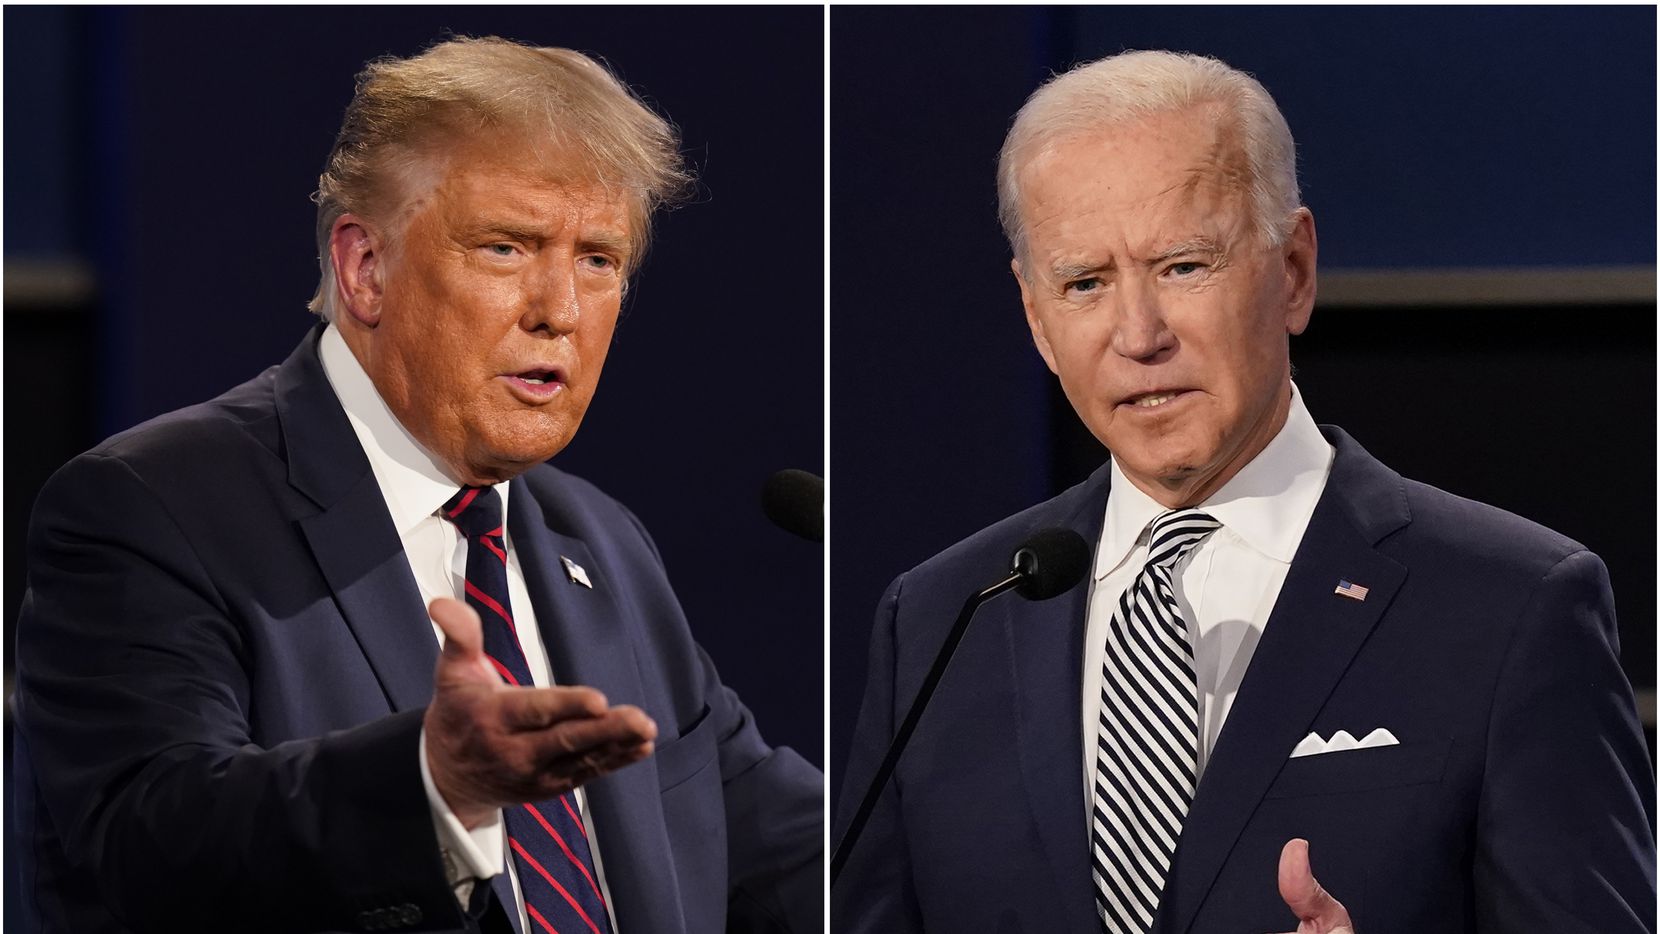 Biden pasará la noche de las elecciones en Delaware y Trump en Washington